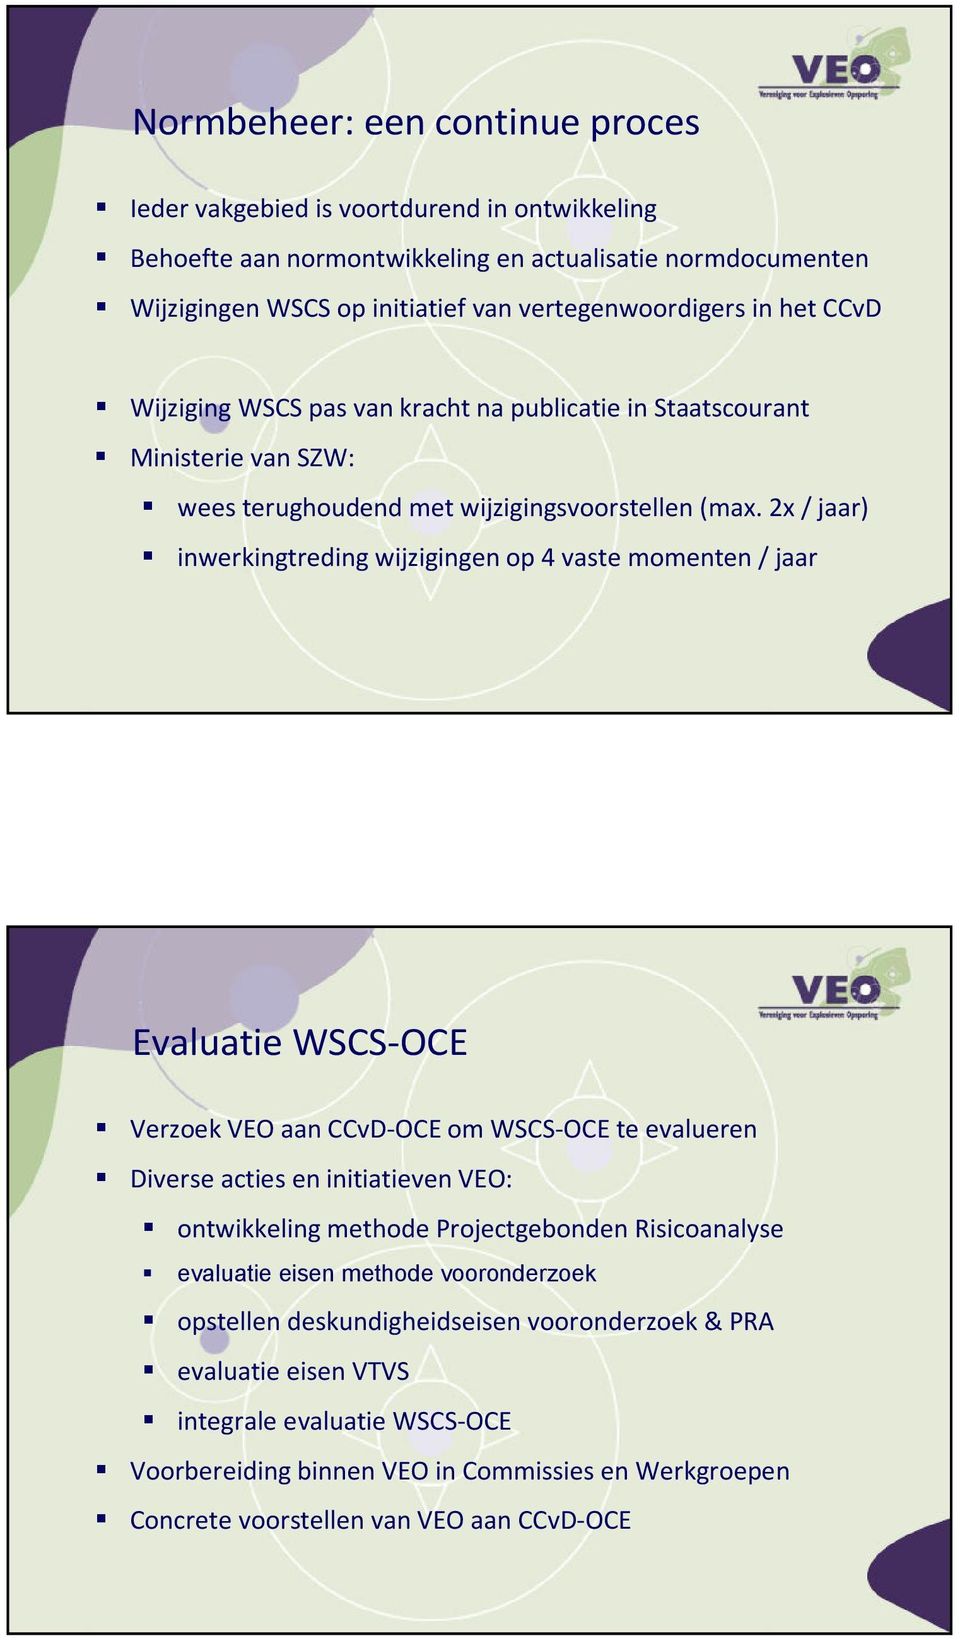 2x / jaar) inwerkingtreding wijzigingen op 4 vaste momenten / jaar Evaluatie WSCS-OCE Verzoek VEO aan CCvD-OCE om WSCS-OCE te evalueren Diverse acties en initiatieven VEO: ontwikkeling methode